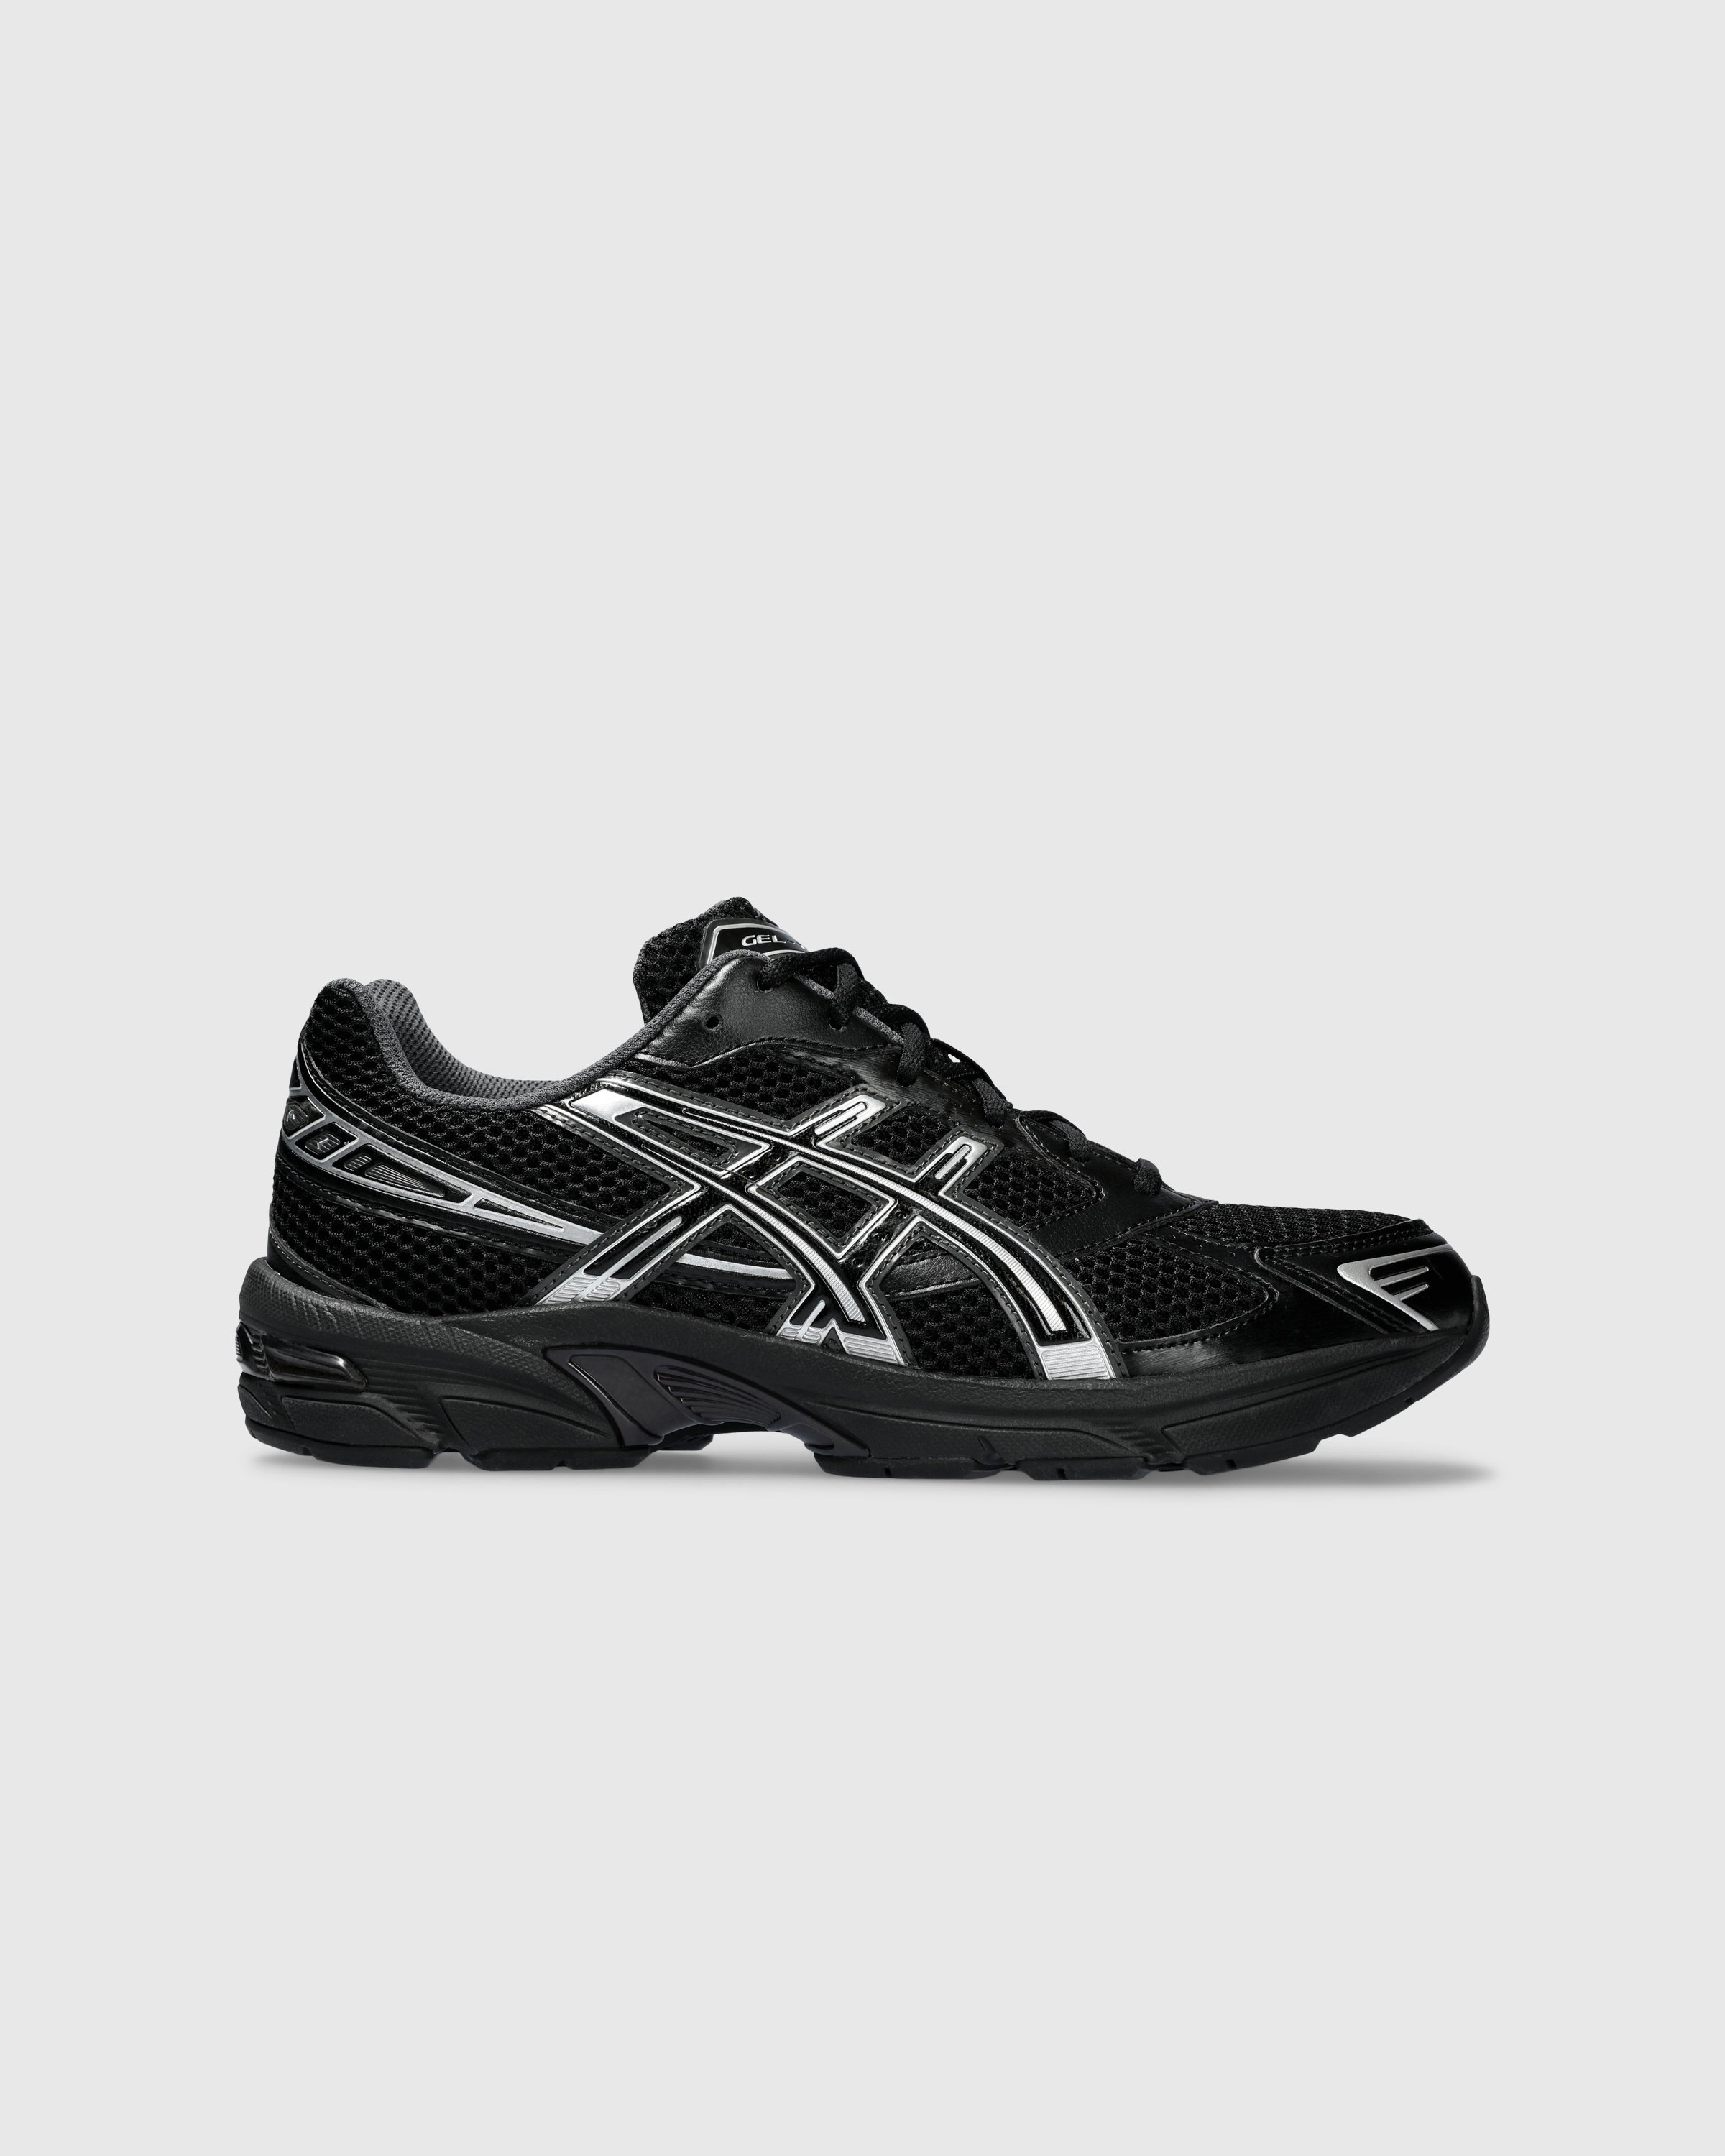 asics - GEL-1130 Black/Pure Silver - Footwear - Black - Image 1